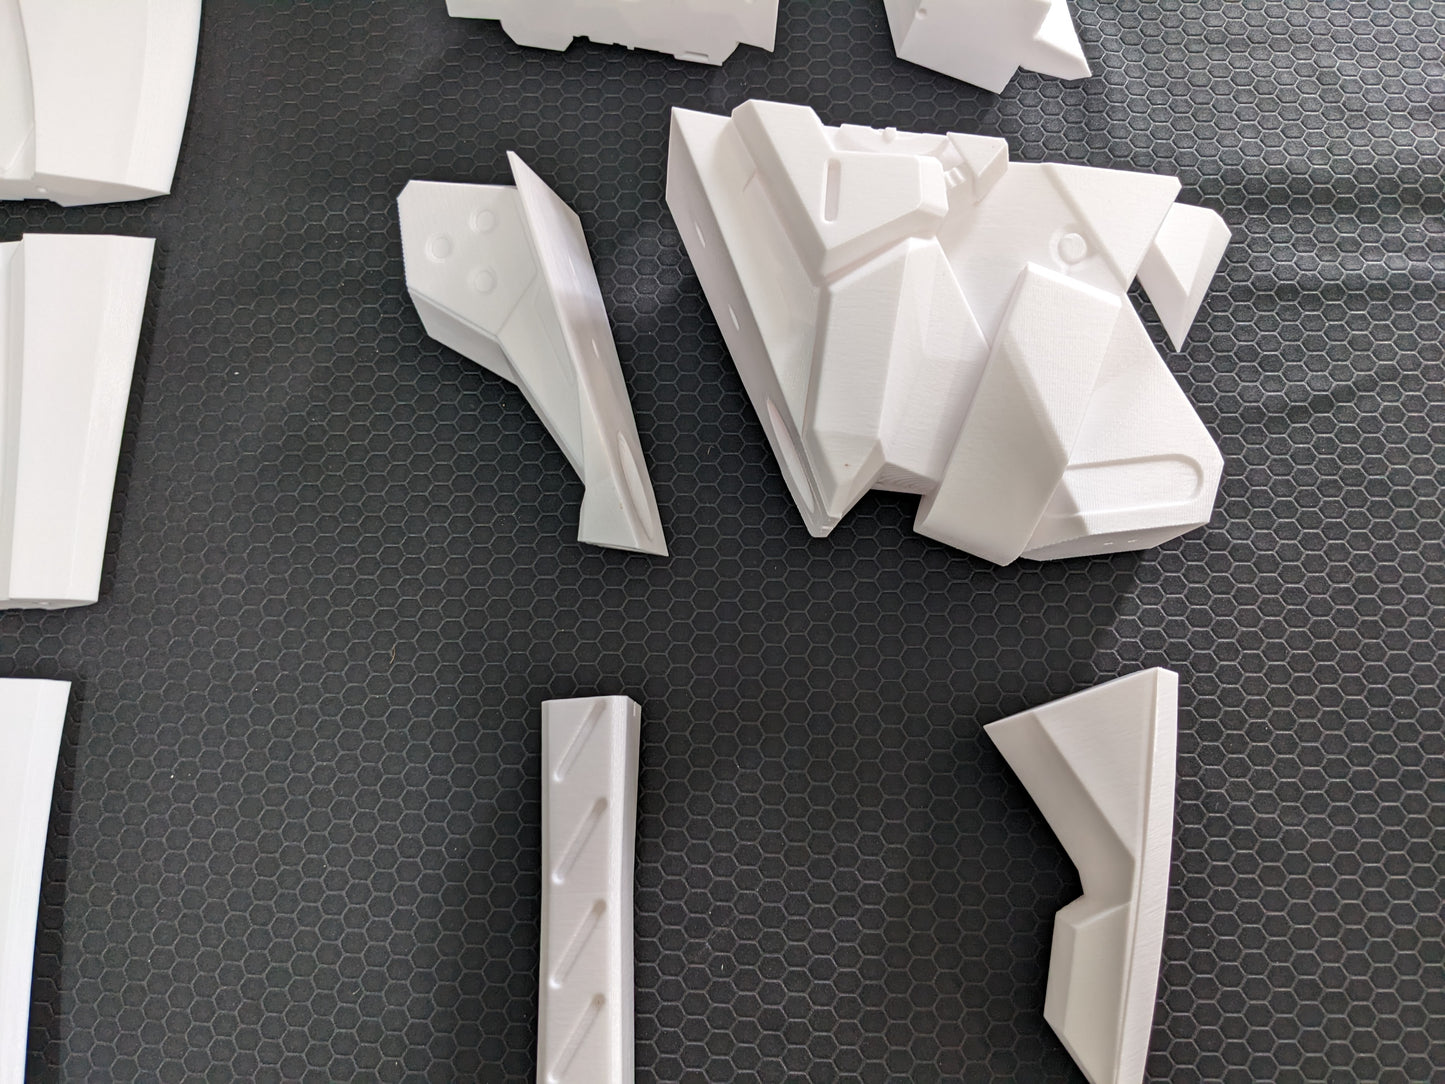 Arlan Sword - Digital 3D Model Files and Physical 3D Printed Kit Options - Honkai: Star Rail Cosplay - Arlan Cosplay